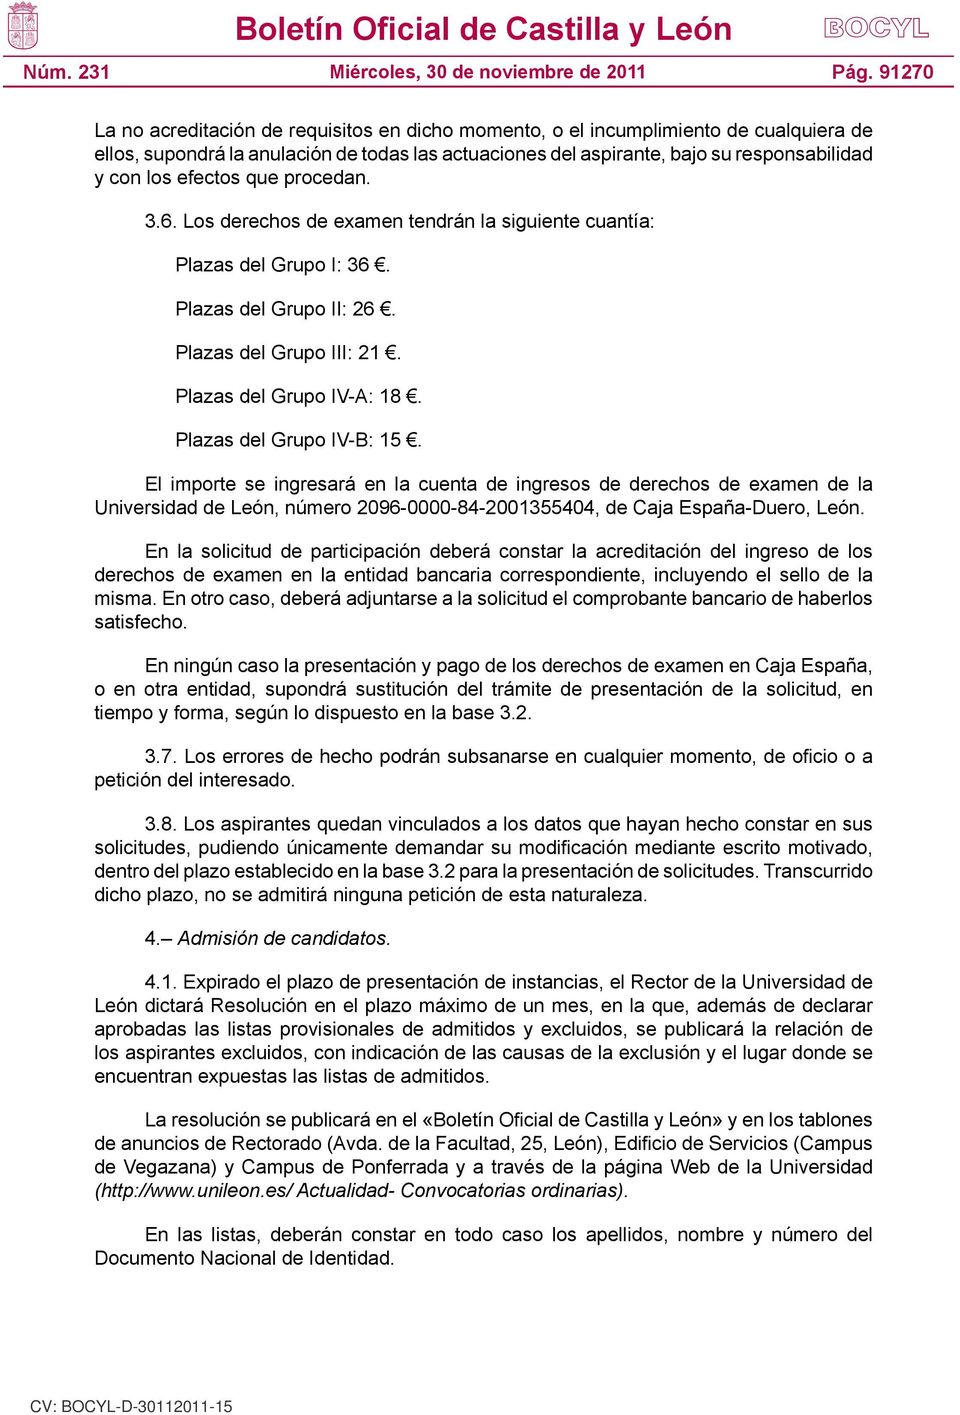 Plazas del Grupo IV-B: 15. El importe se ingresará en la cuenta de ingresos de derechos de examen de la Universidad de León, número 2096-0000-84-2001355404, de Caja España-Duero, León.